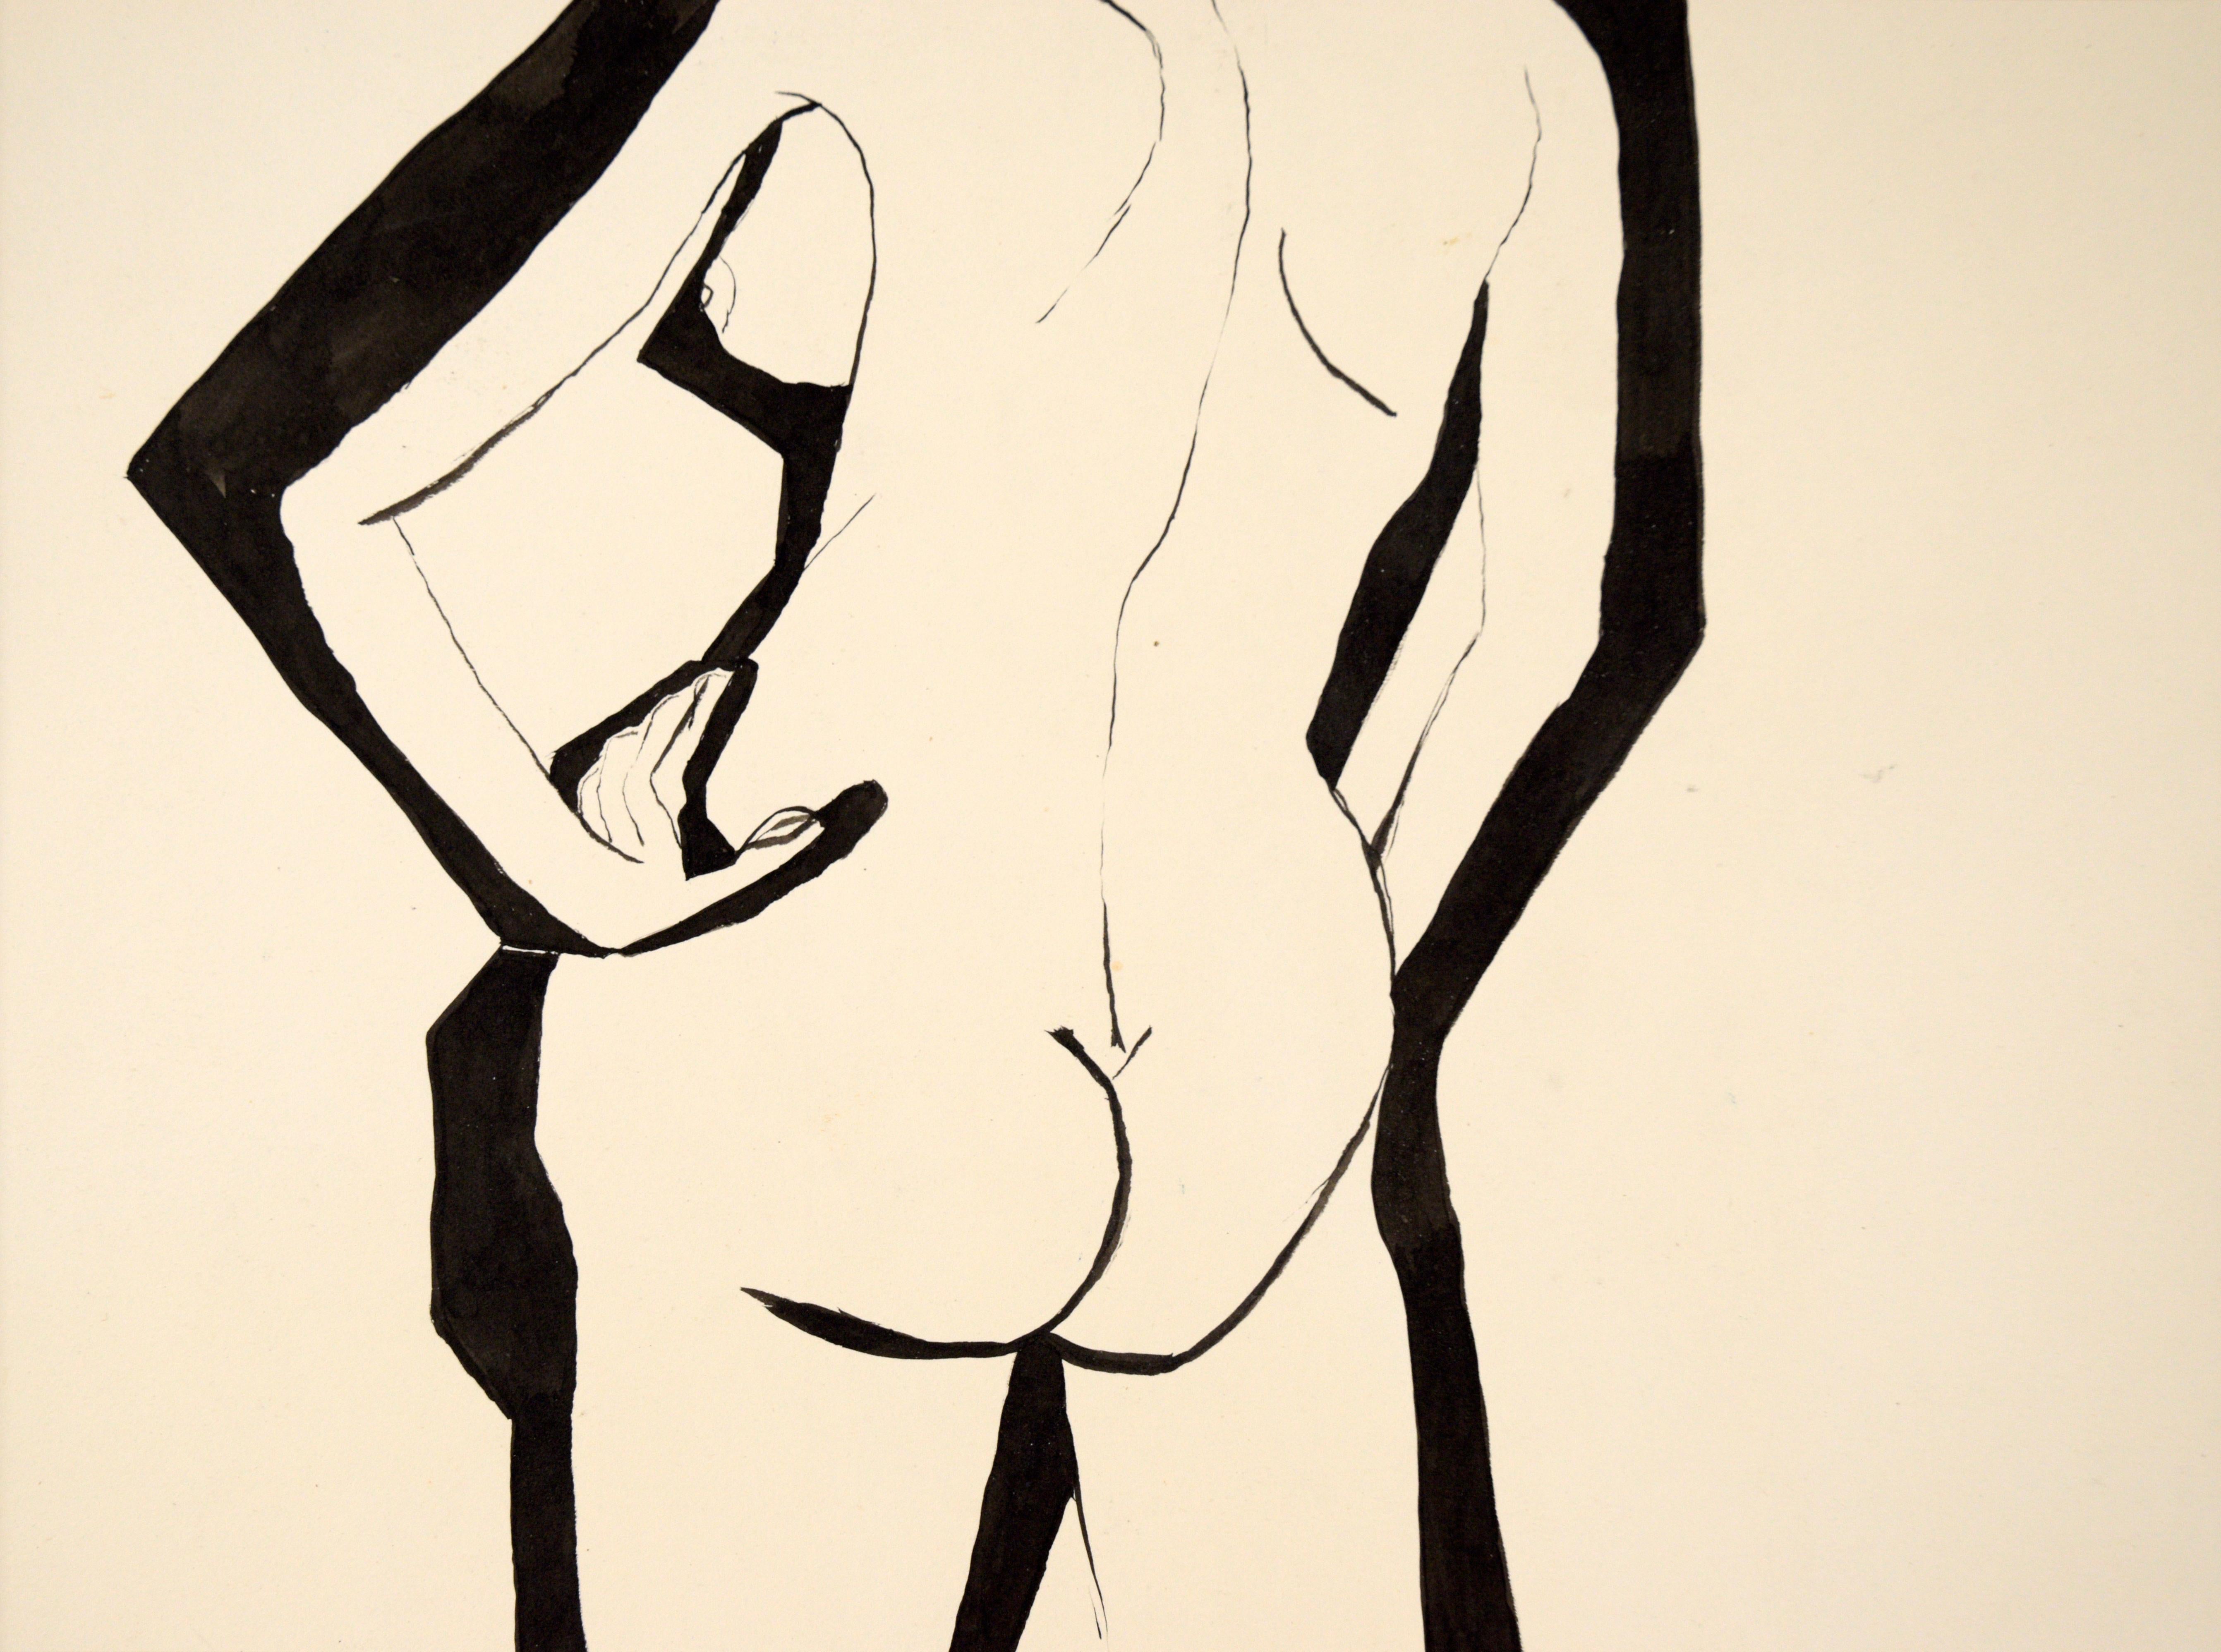 Peinture figurative abstraite moderniste d'un nu figuratif à l'encre sur papier d'Inde - Expressionnisme abstrait Art par Louis Nadalini